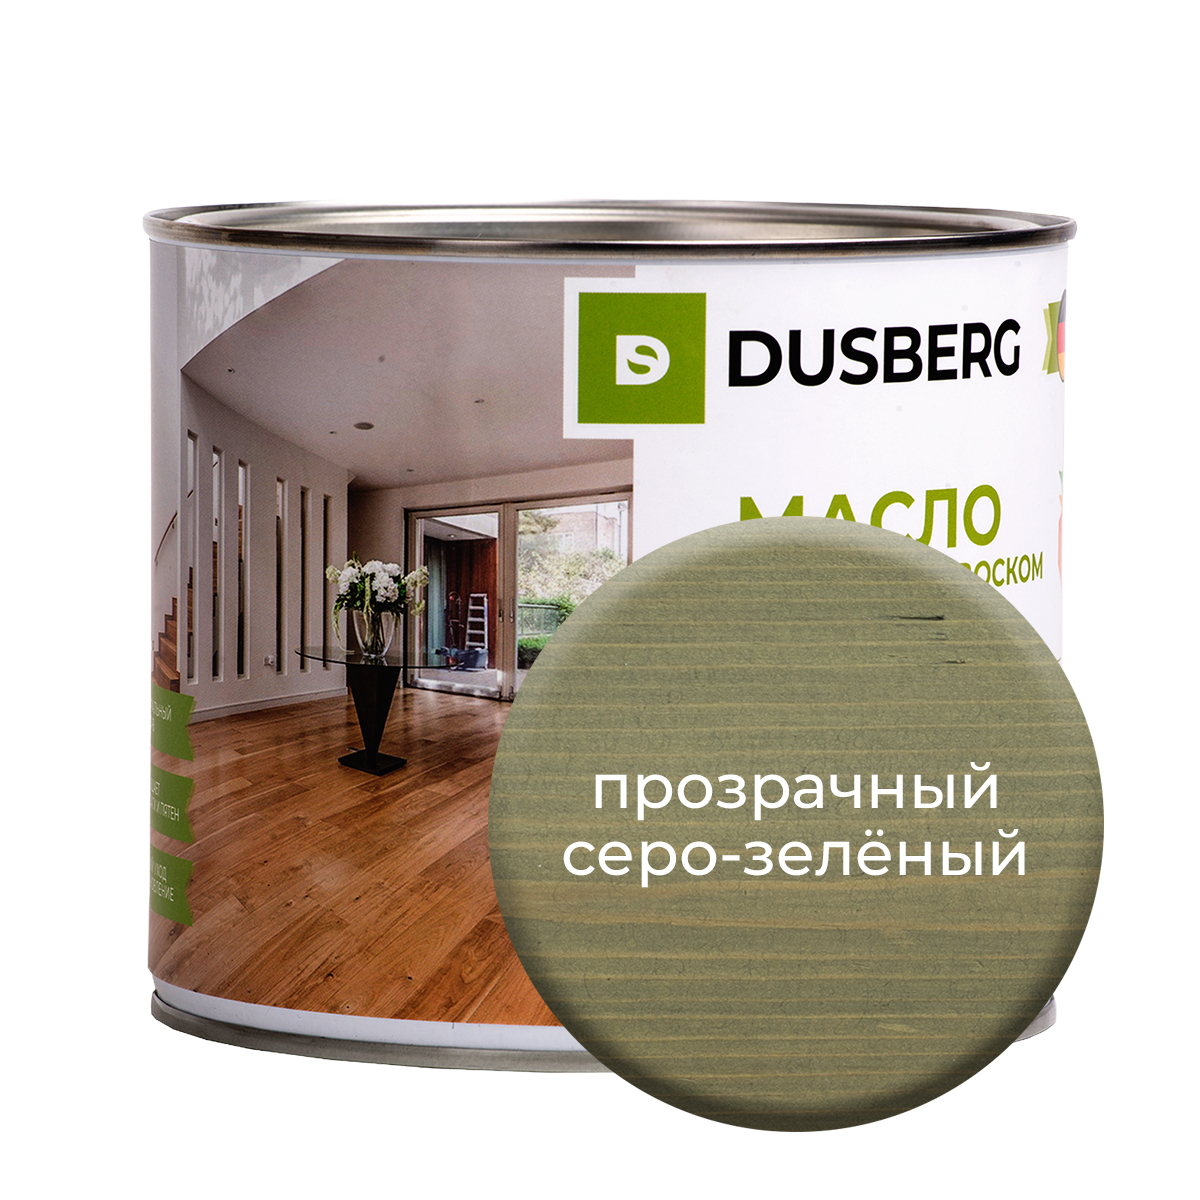 Масло Dusberg с твердым воском на бесцветной основе, 2 л Прозрачный серо-зеленый